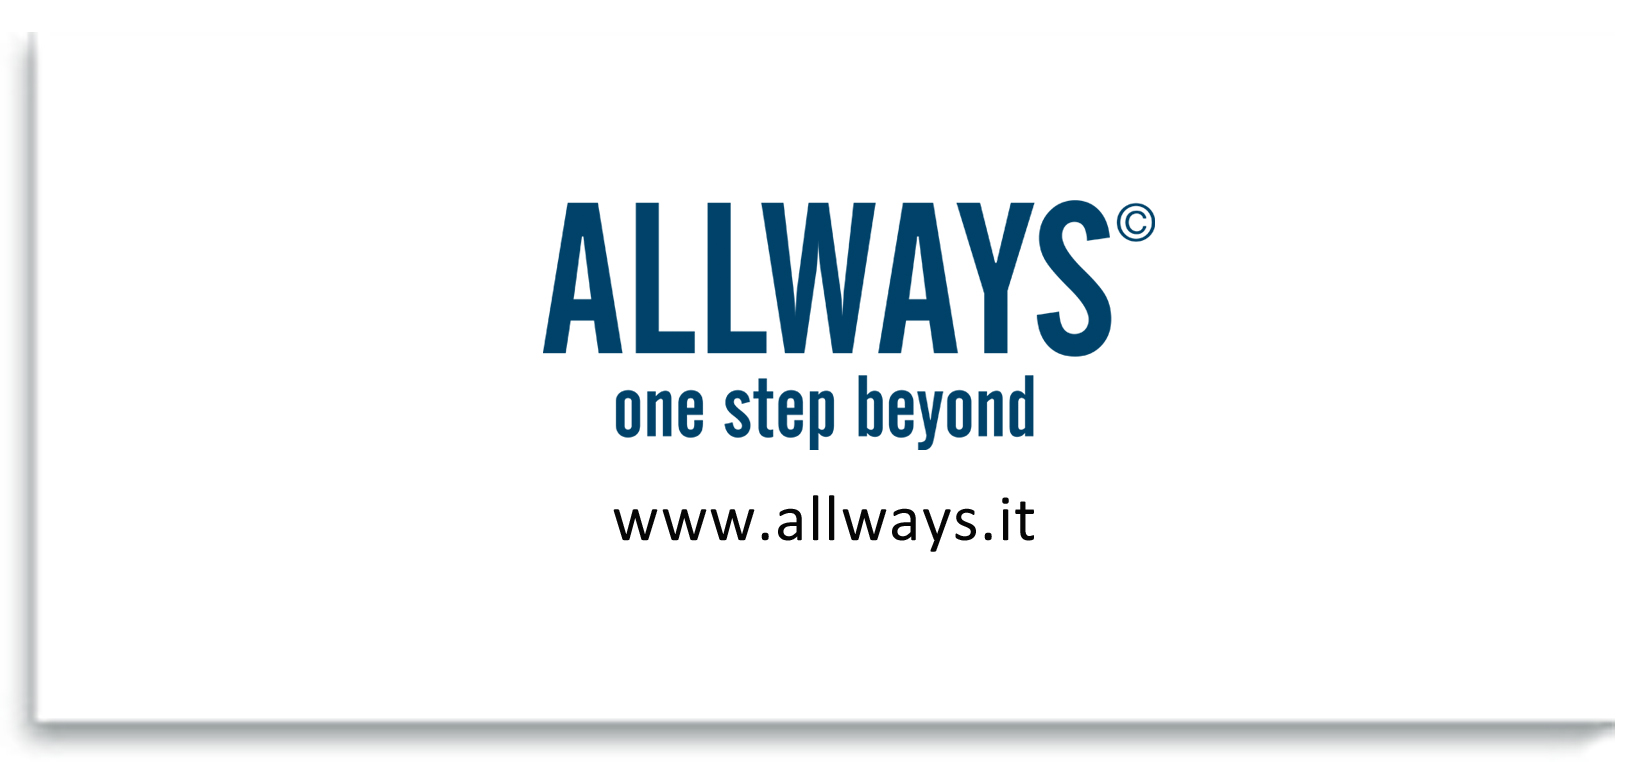 Logo della azienda Allways colore blu con riferimento al sito www.allways.it